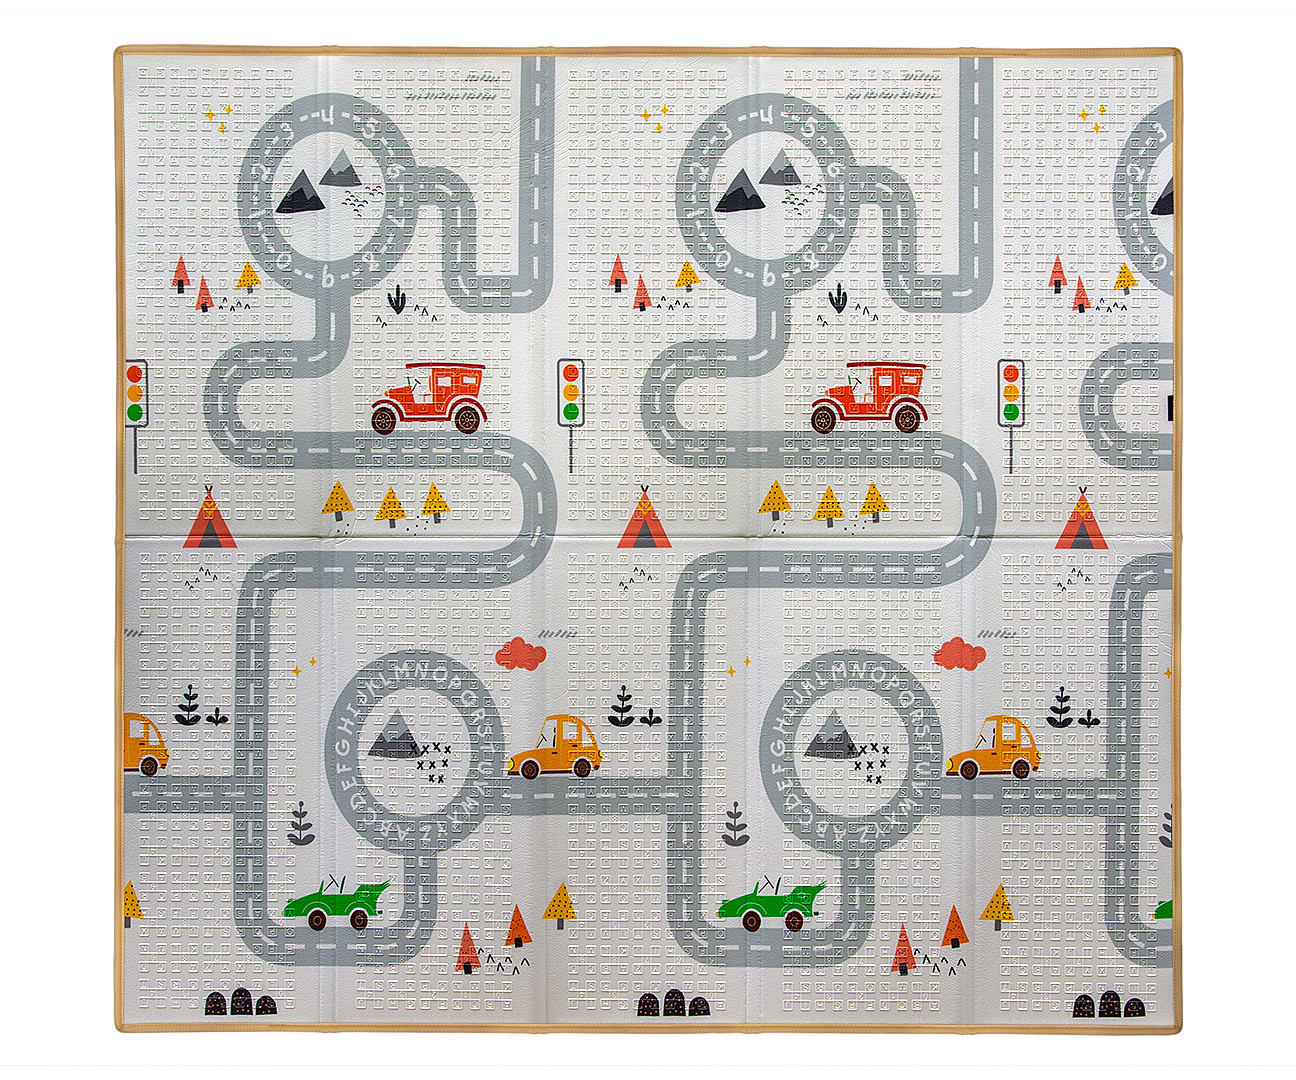 Hrací podložka pro děti MILLY MALLY 197x177 cm - Happy Zoo